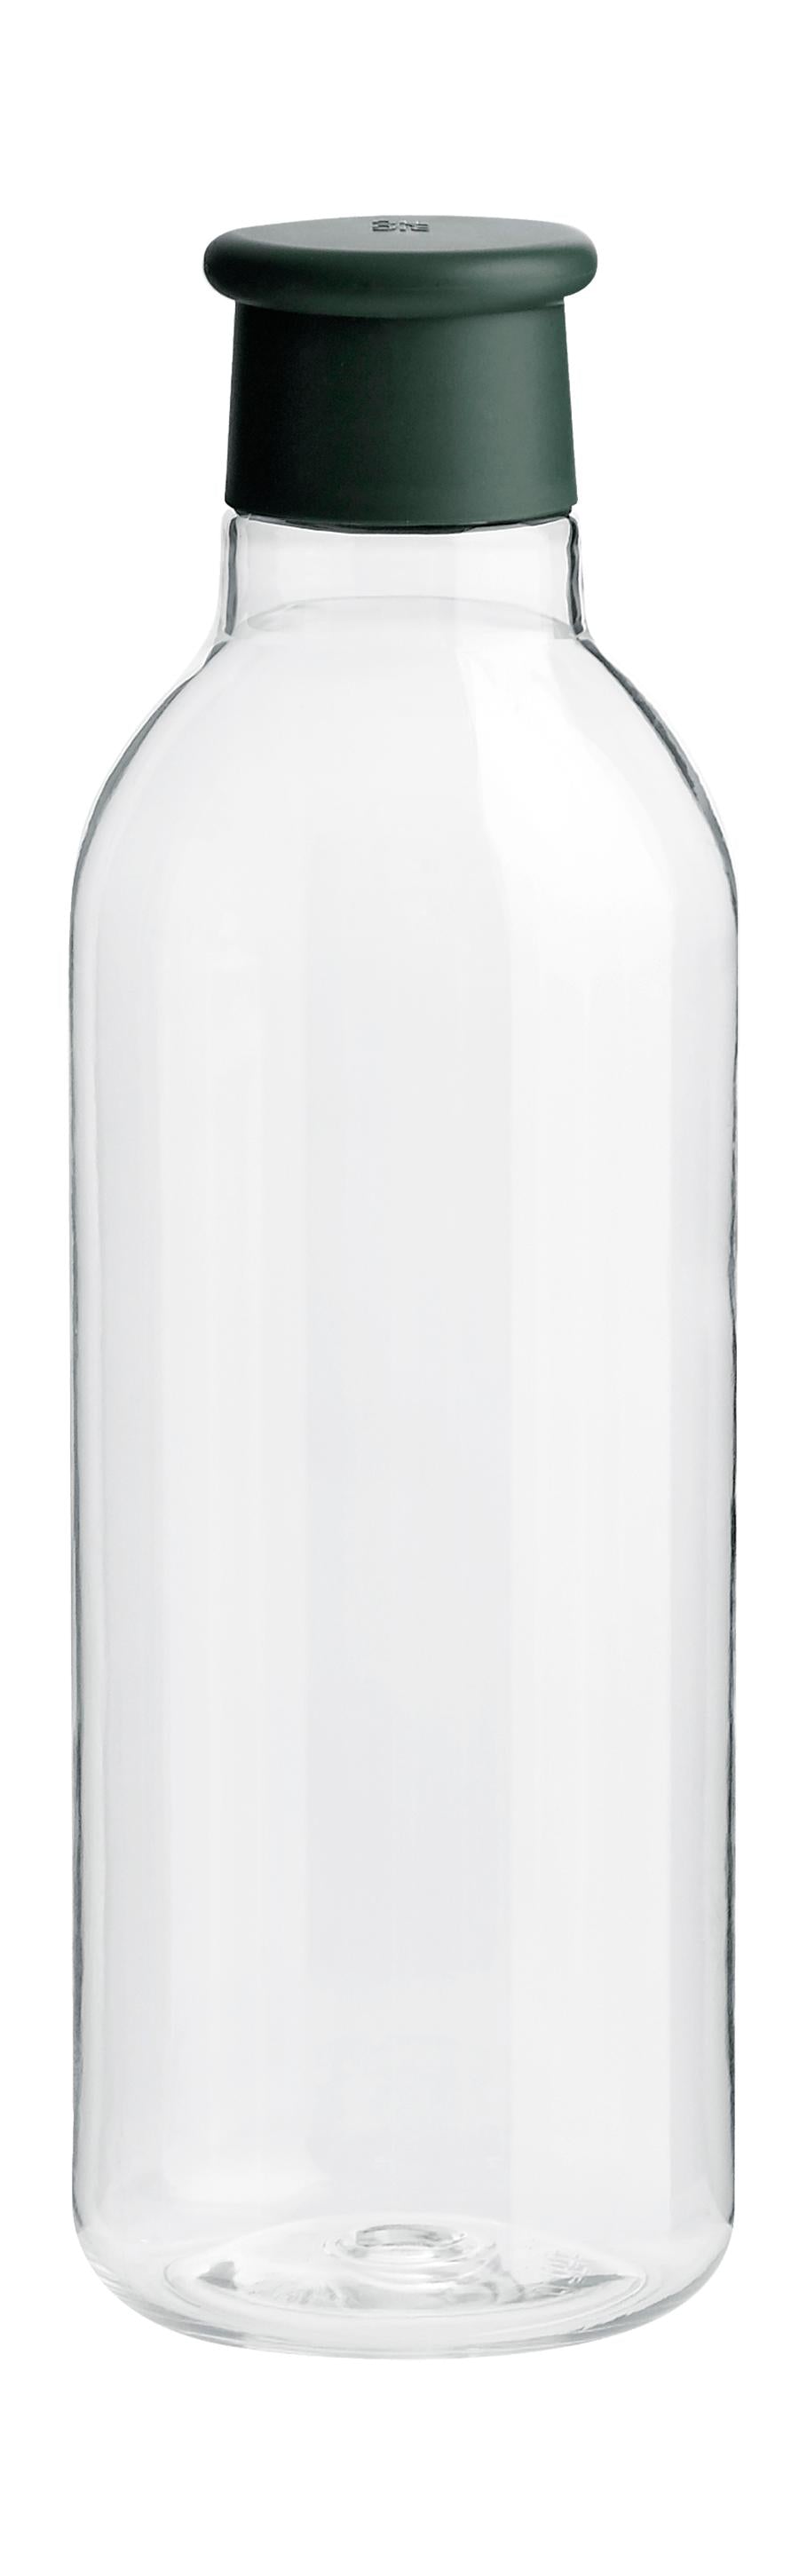 Rig-Tig Dryck-det dricker flaska 0,75 L, mörkgrön